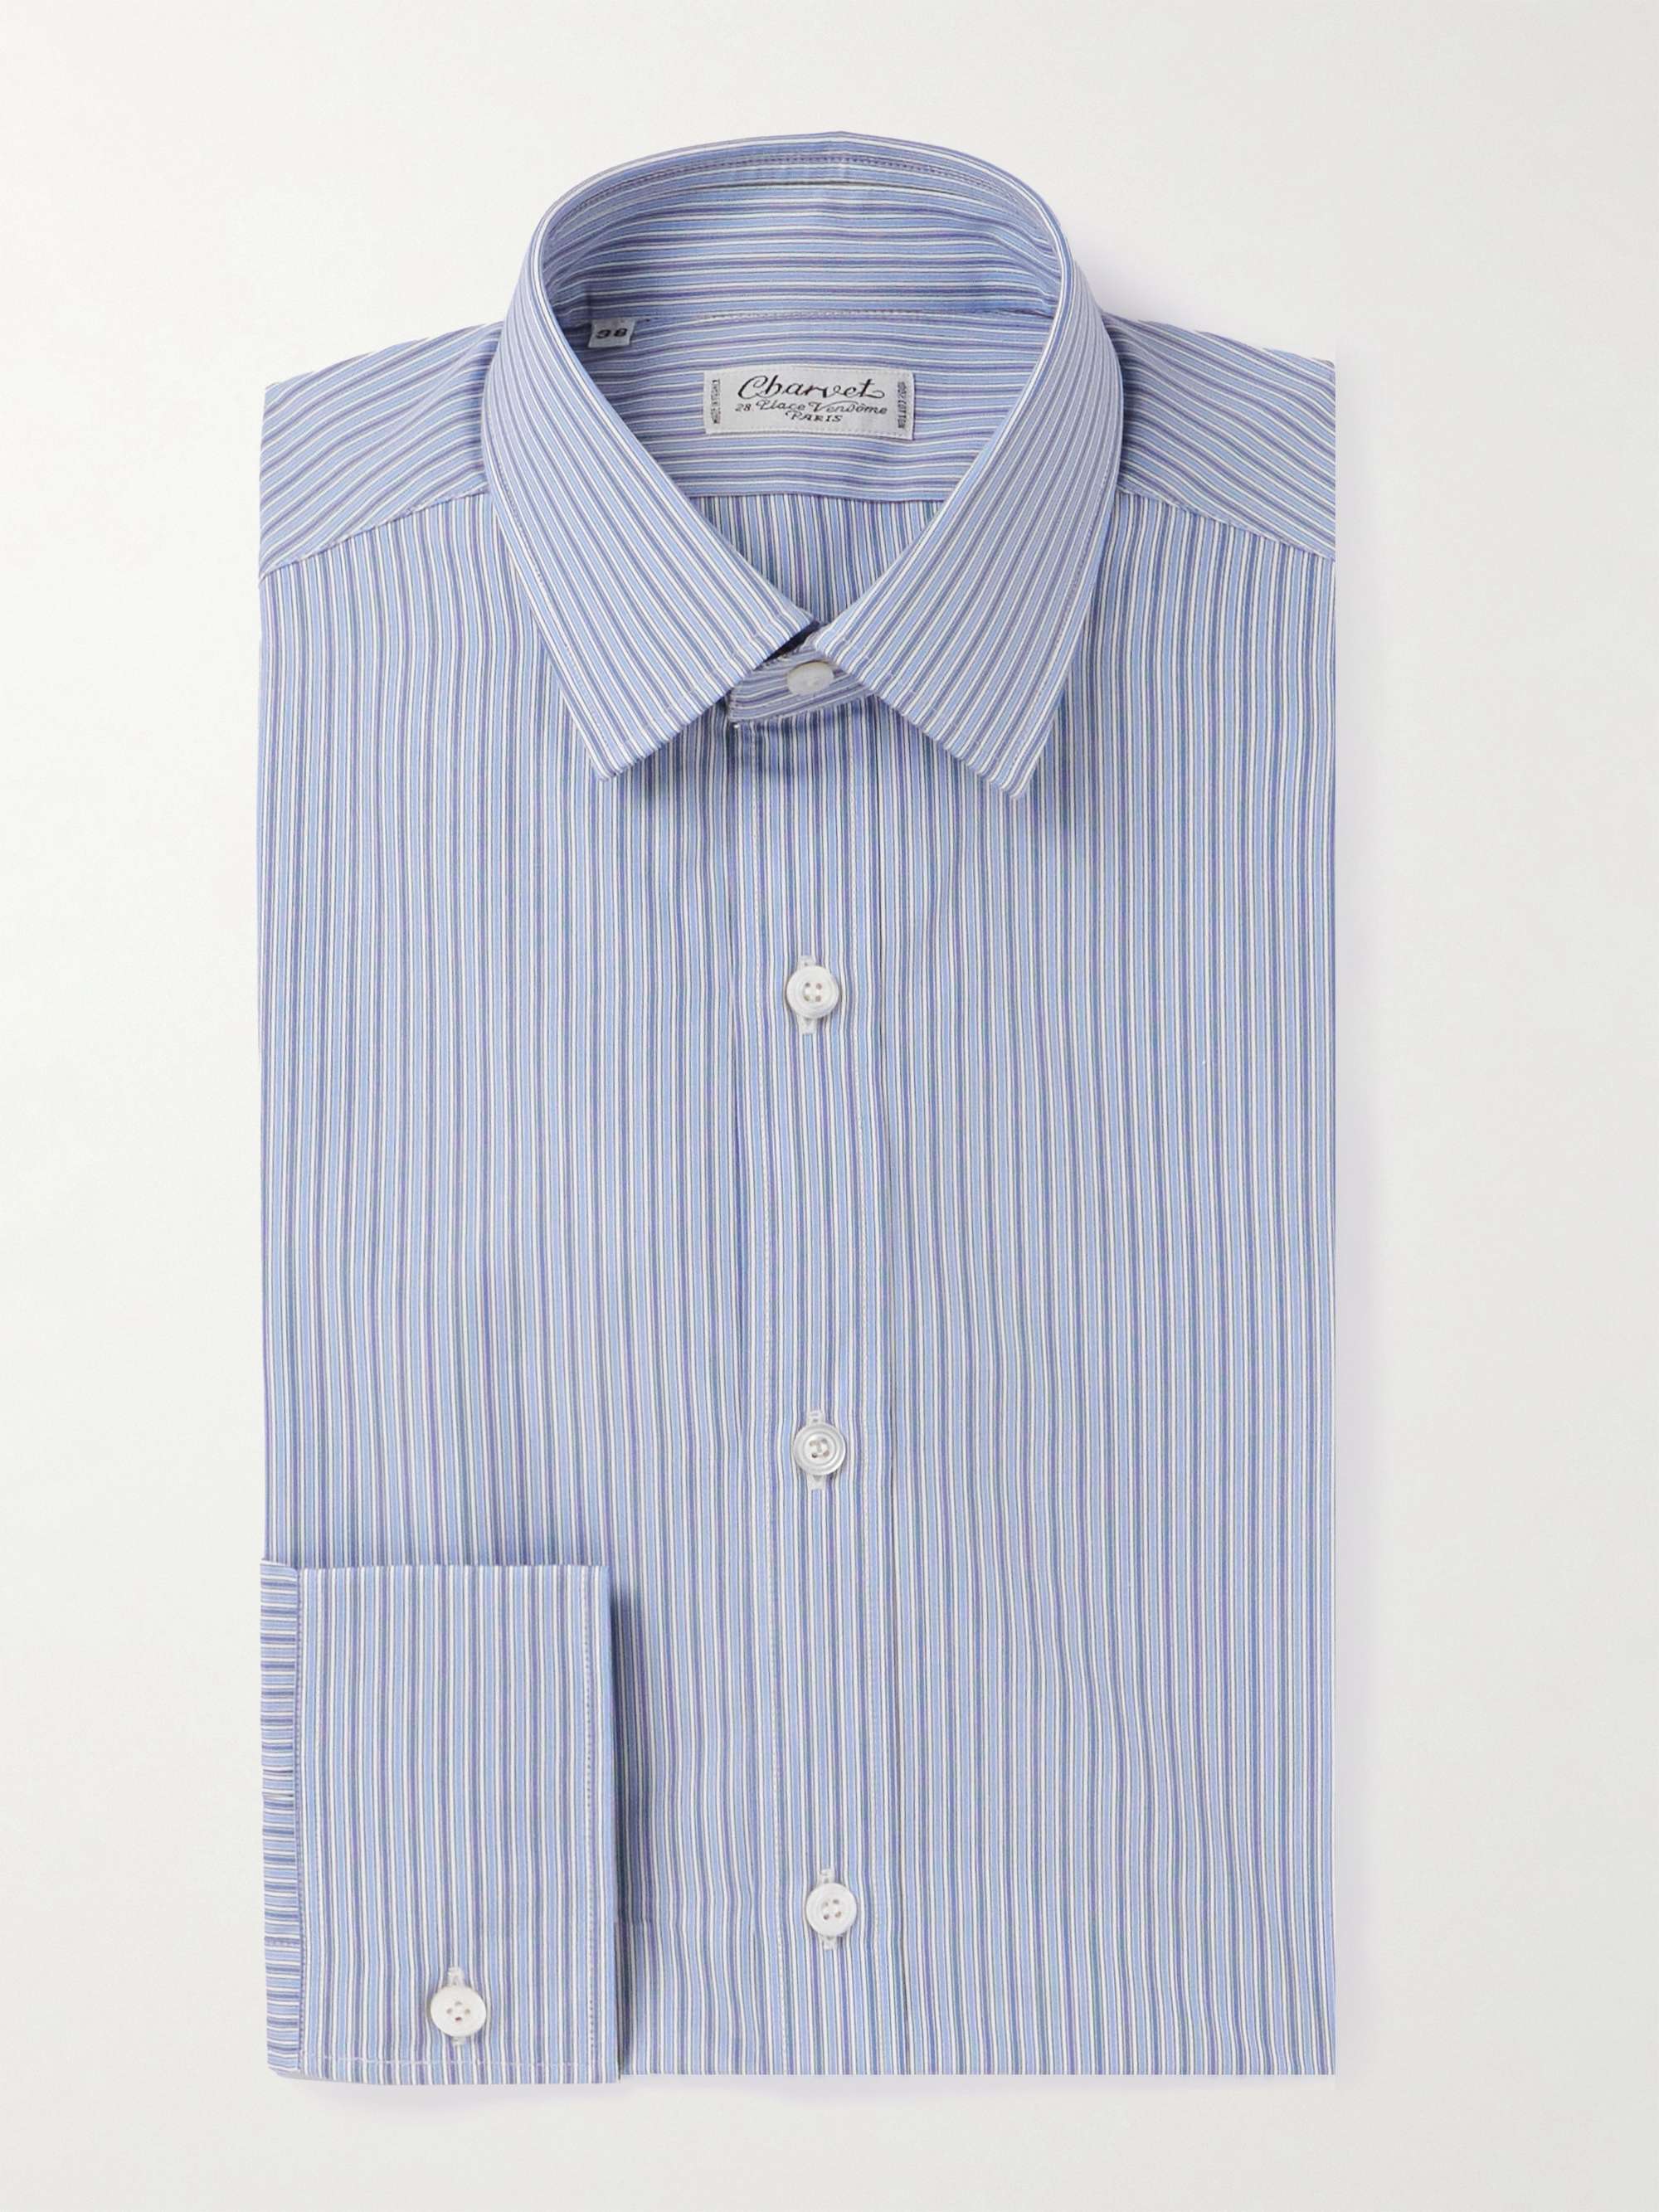 CHARVET Striped Cotton Oxford Shirt for Men | MR PORTER